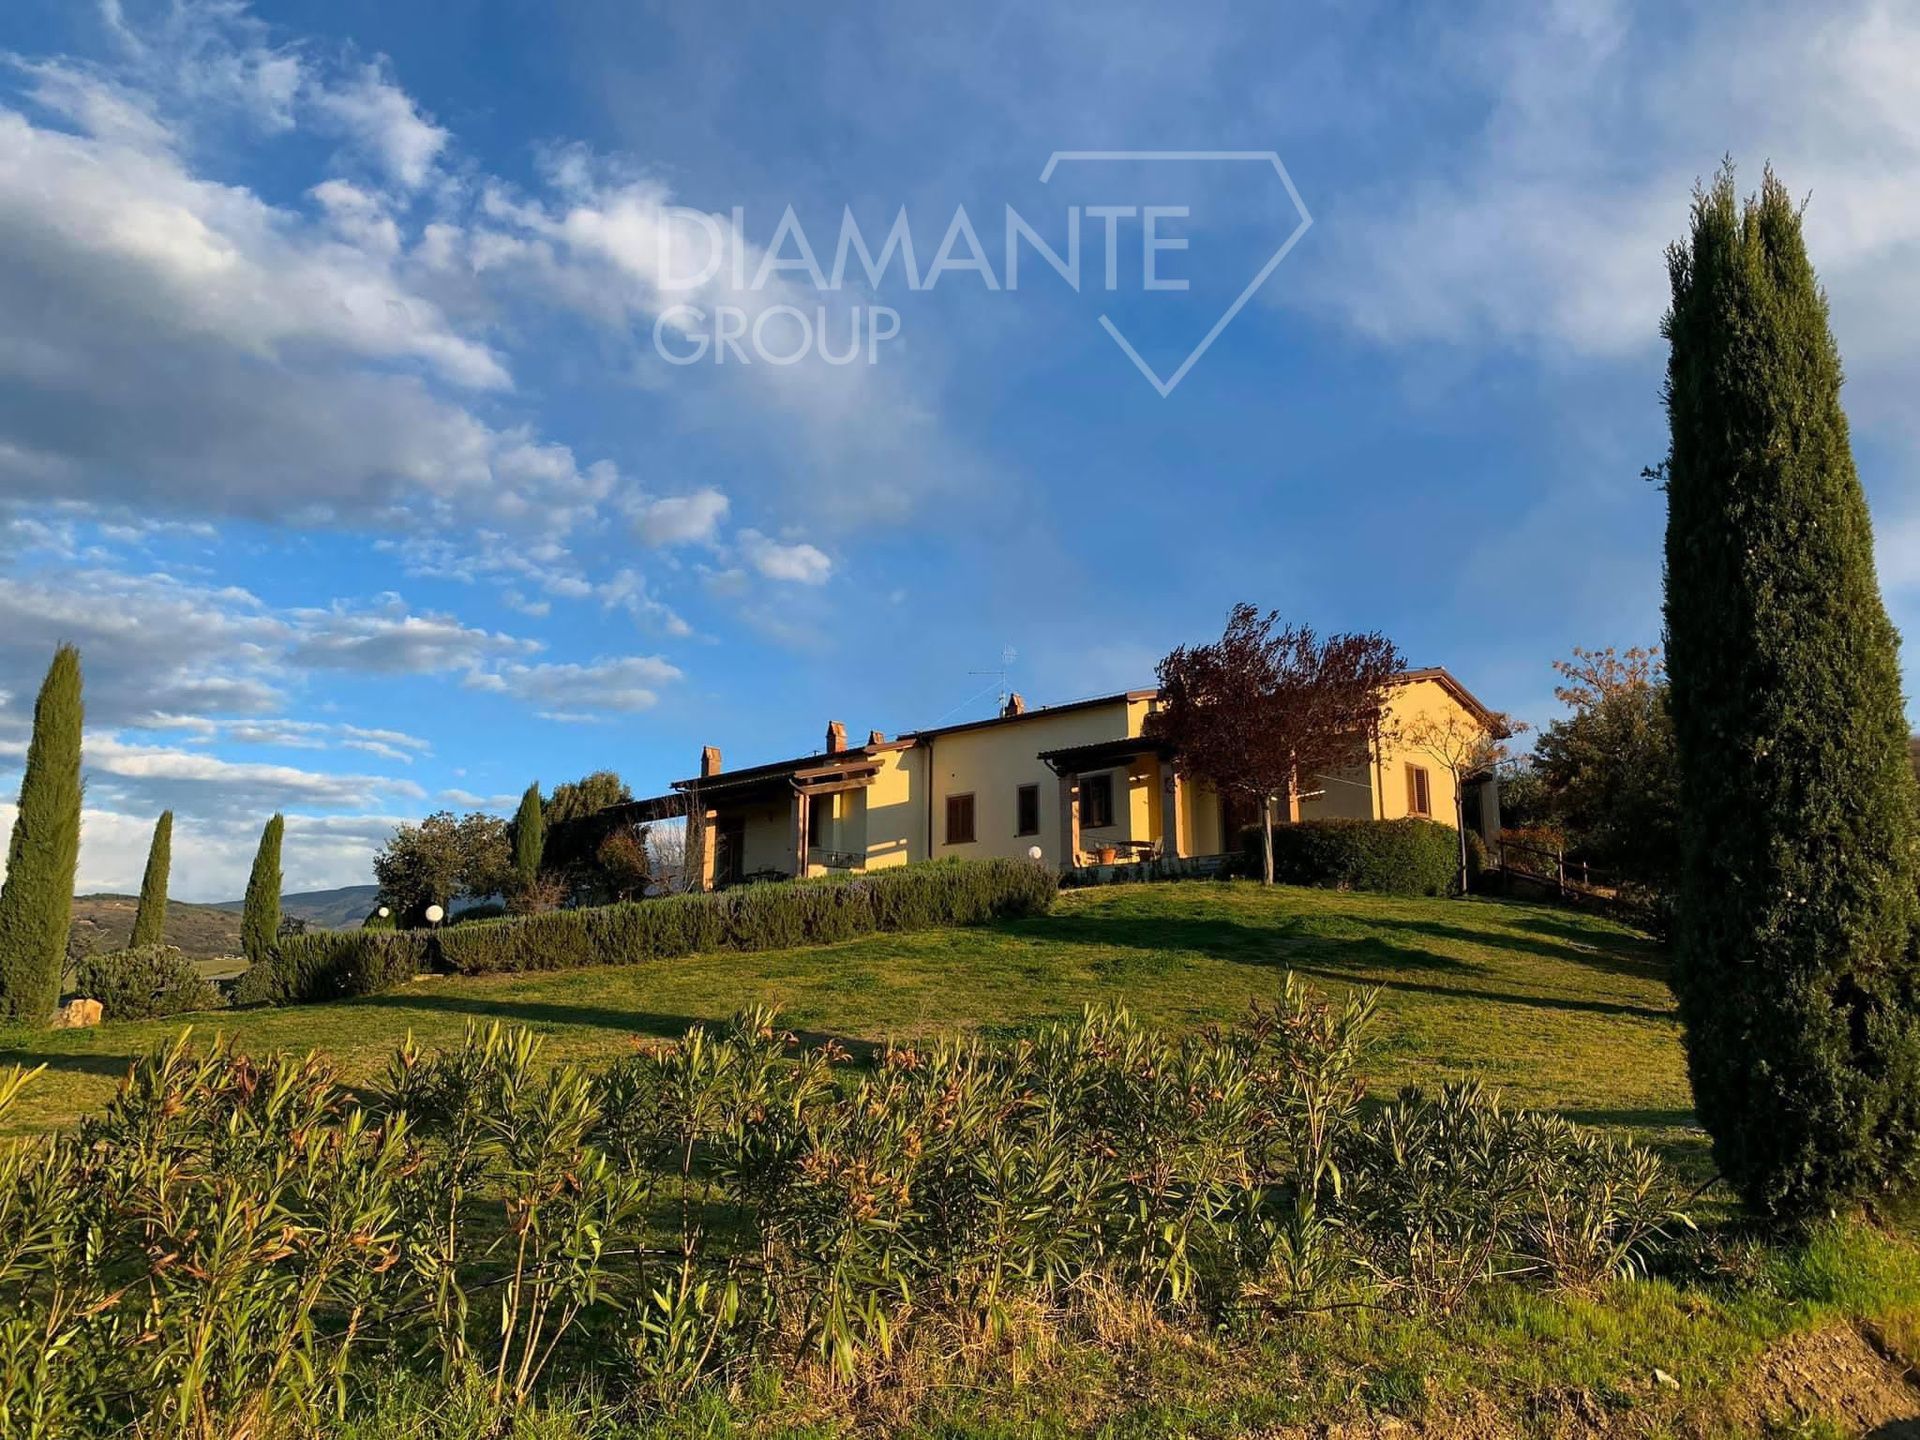 Para venda casale in zona tranquila Castel del Piano Toscana